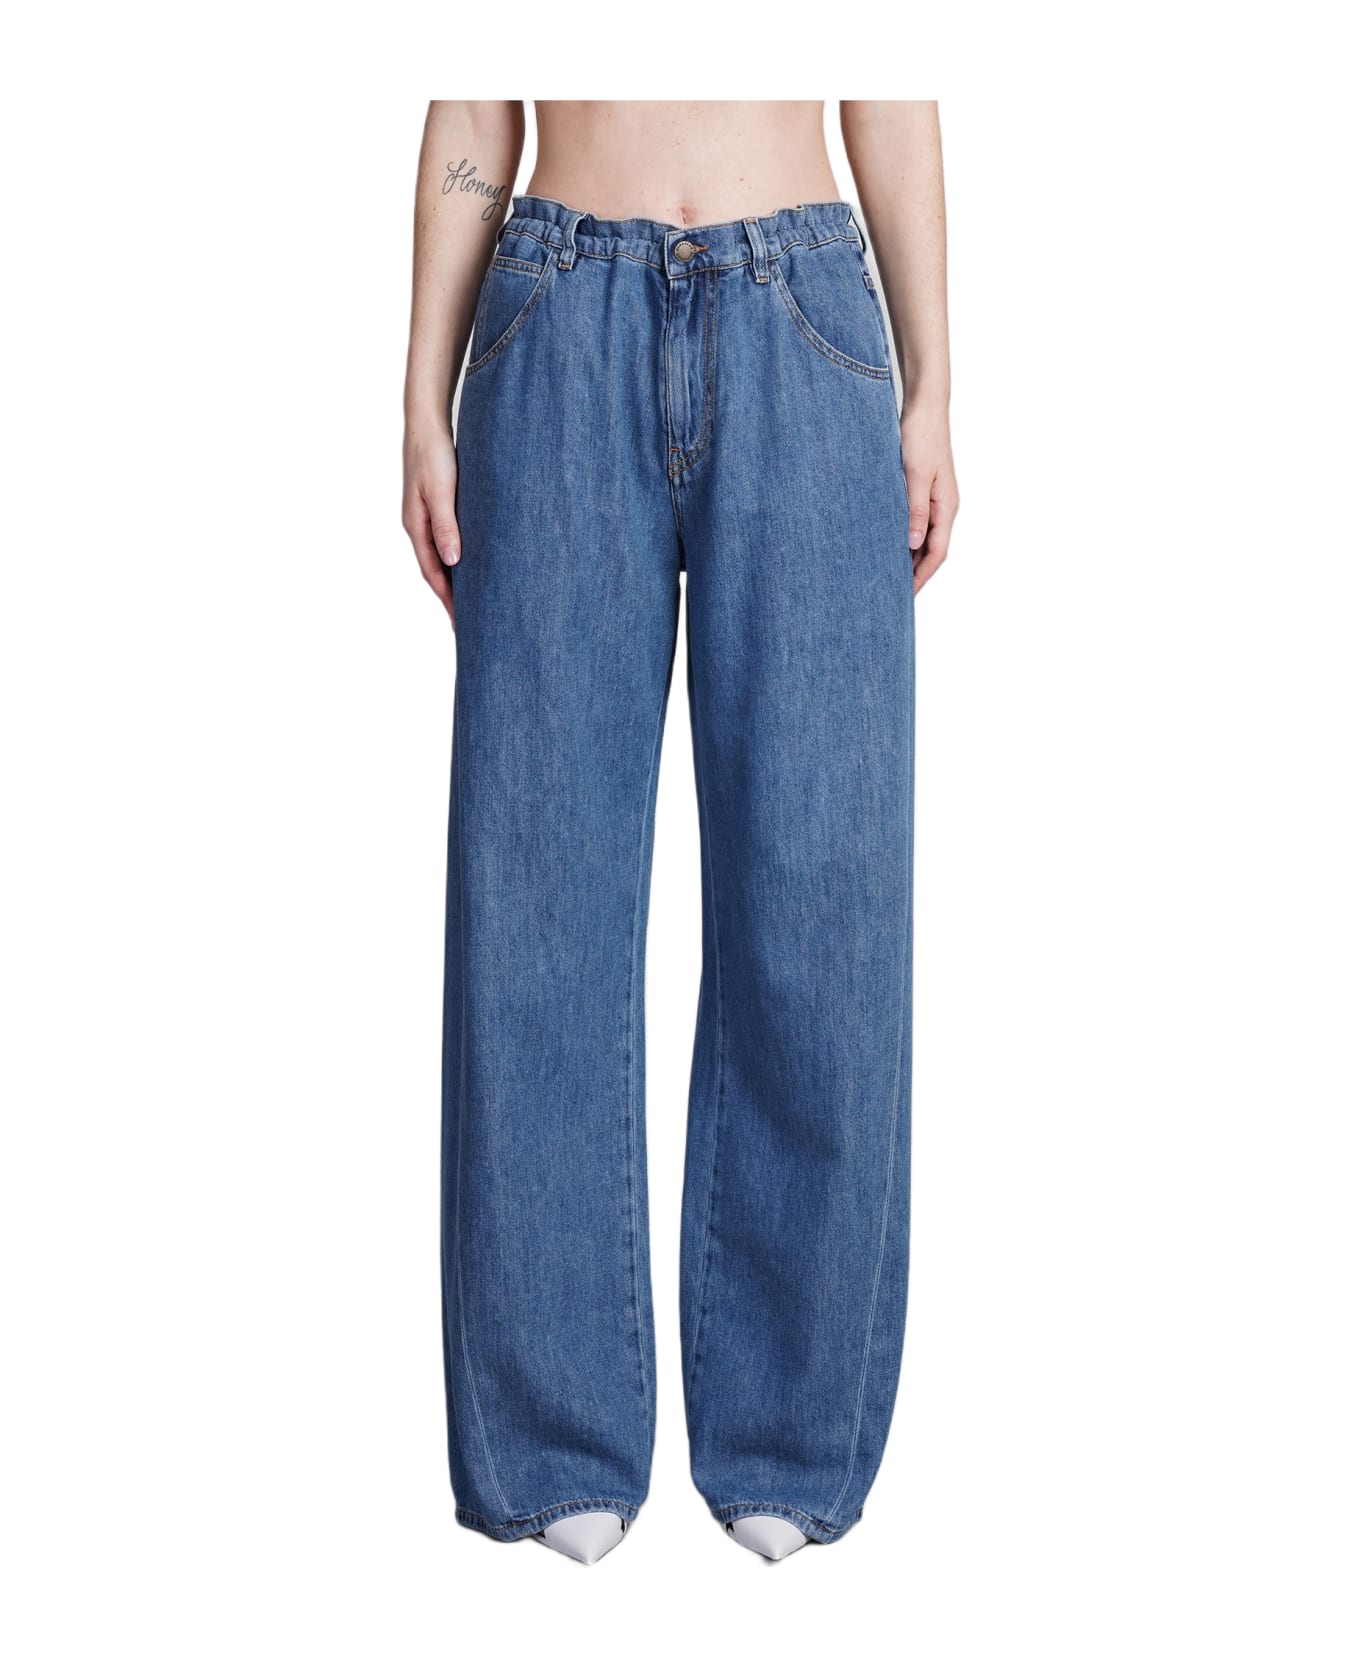 DARKPARK Iris Jeans In Blue Cotton - blue デニム